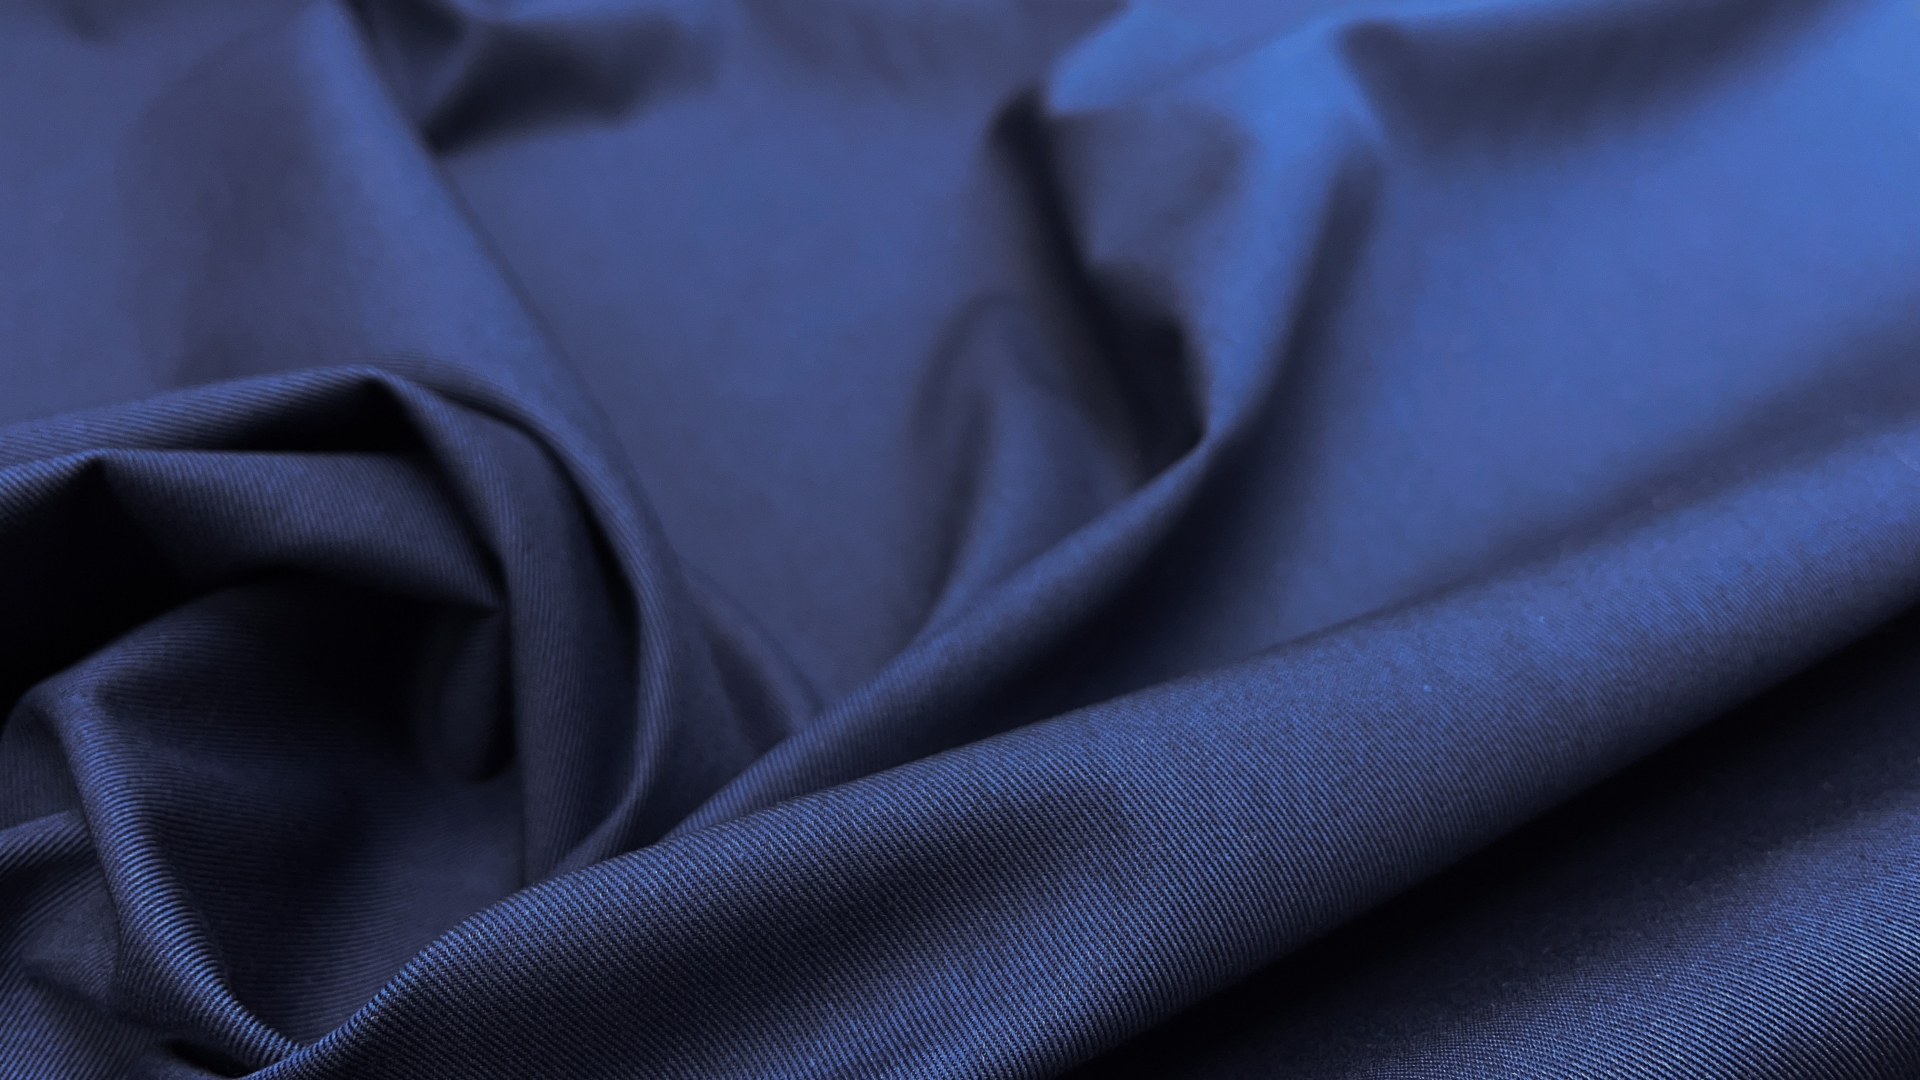 Хлопковый габардин спокойного синего цвета. Идеальный вариант для тренча или брюк в стиле casual.